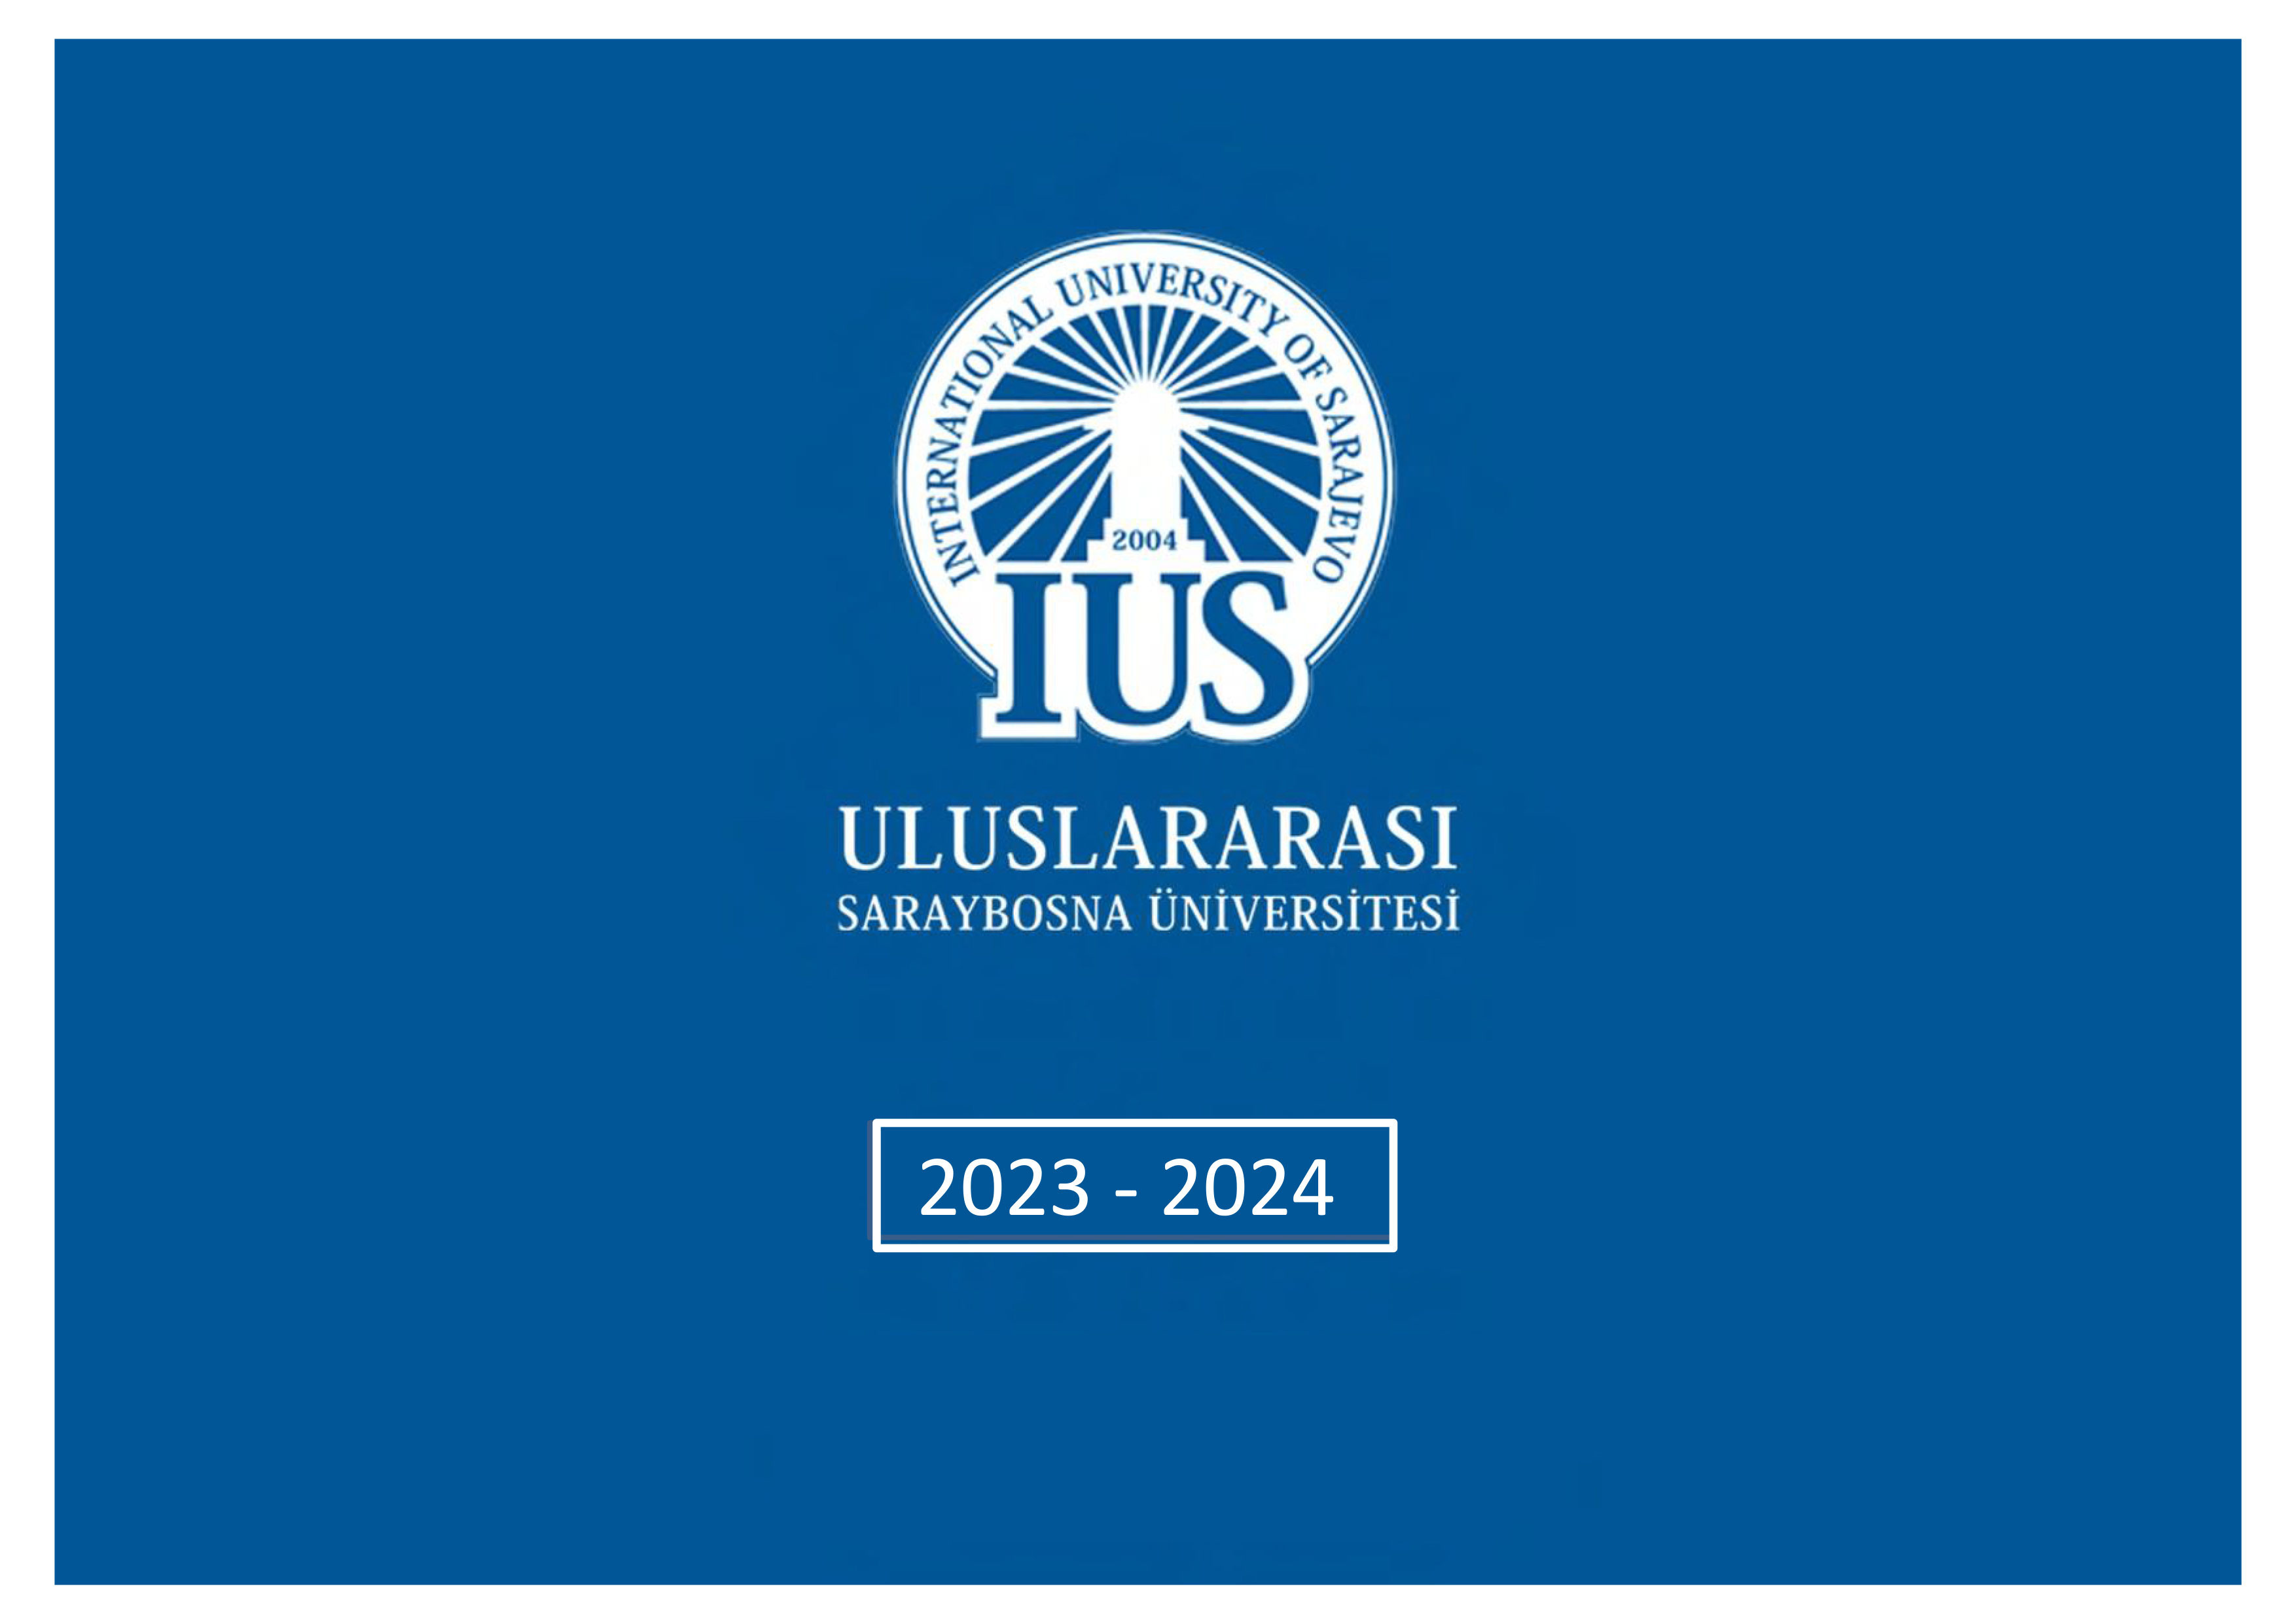 Yurt Dışı Üniversite, Uluslararası Saraybosna Üniversitesi